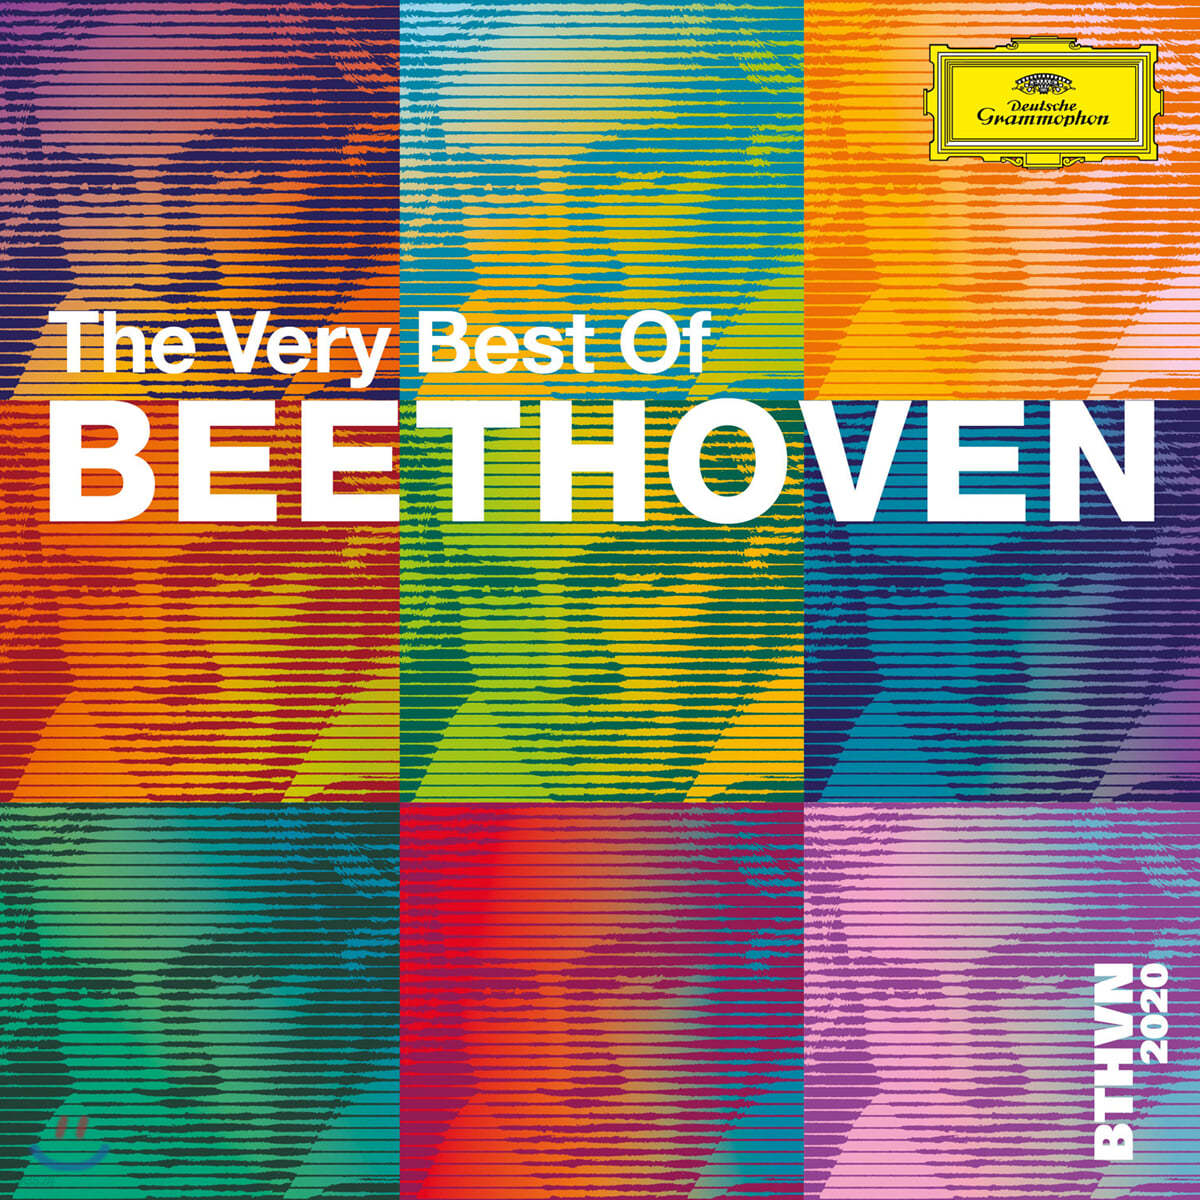 베토벤 탄생 250년 기념 명연주 모음집 (Beethoven 2020 - The Very Best of Beethoven)